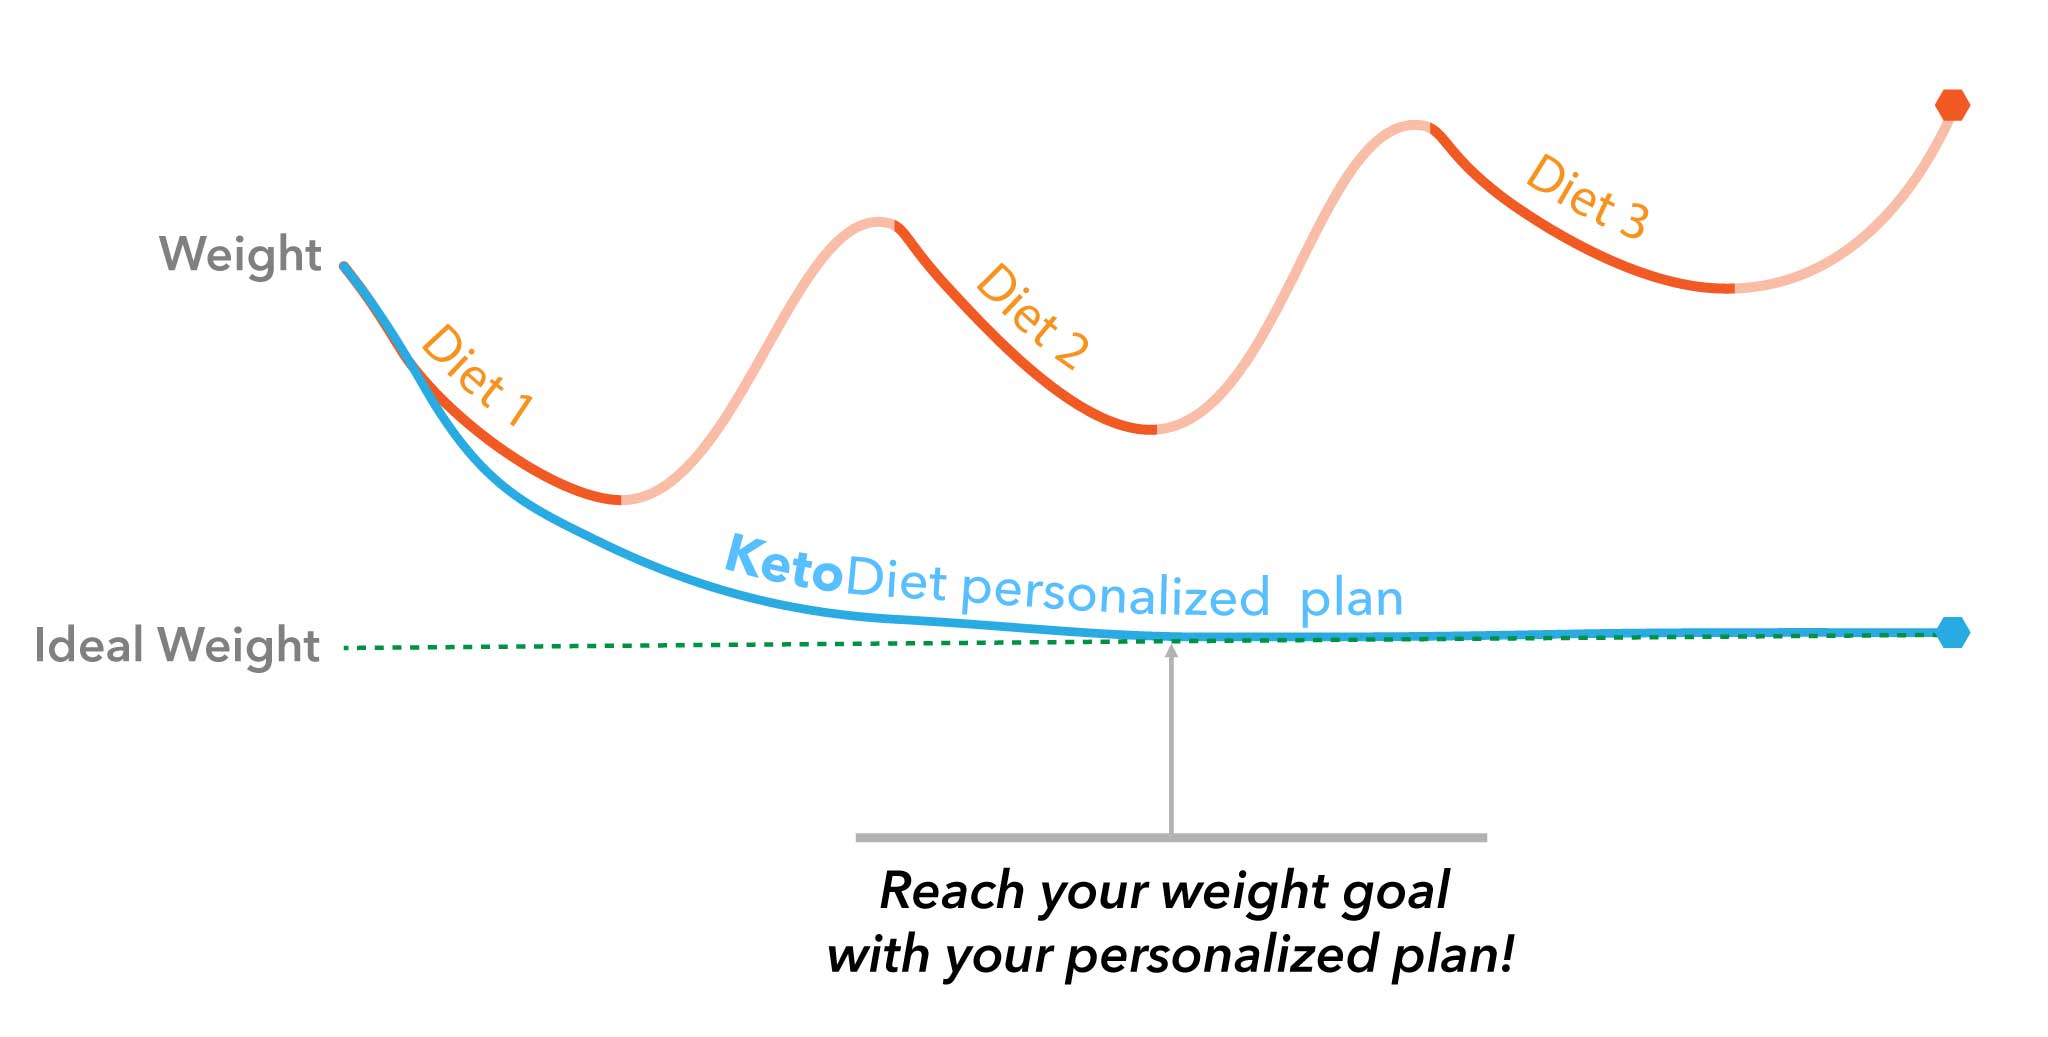 KetoDiet plan chart comparison